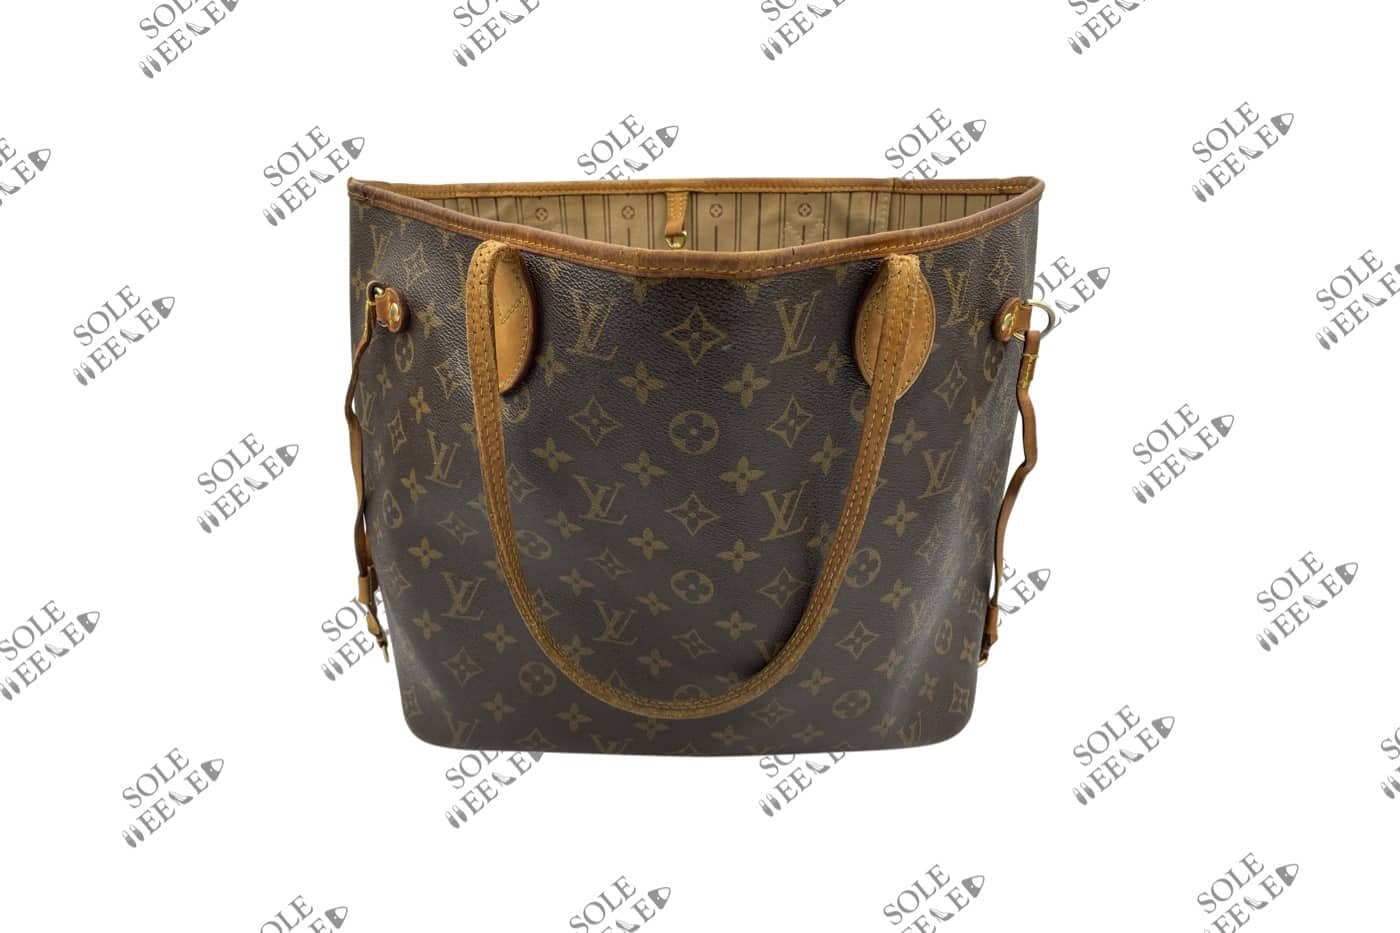 lv purse straps for handbags